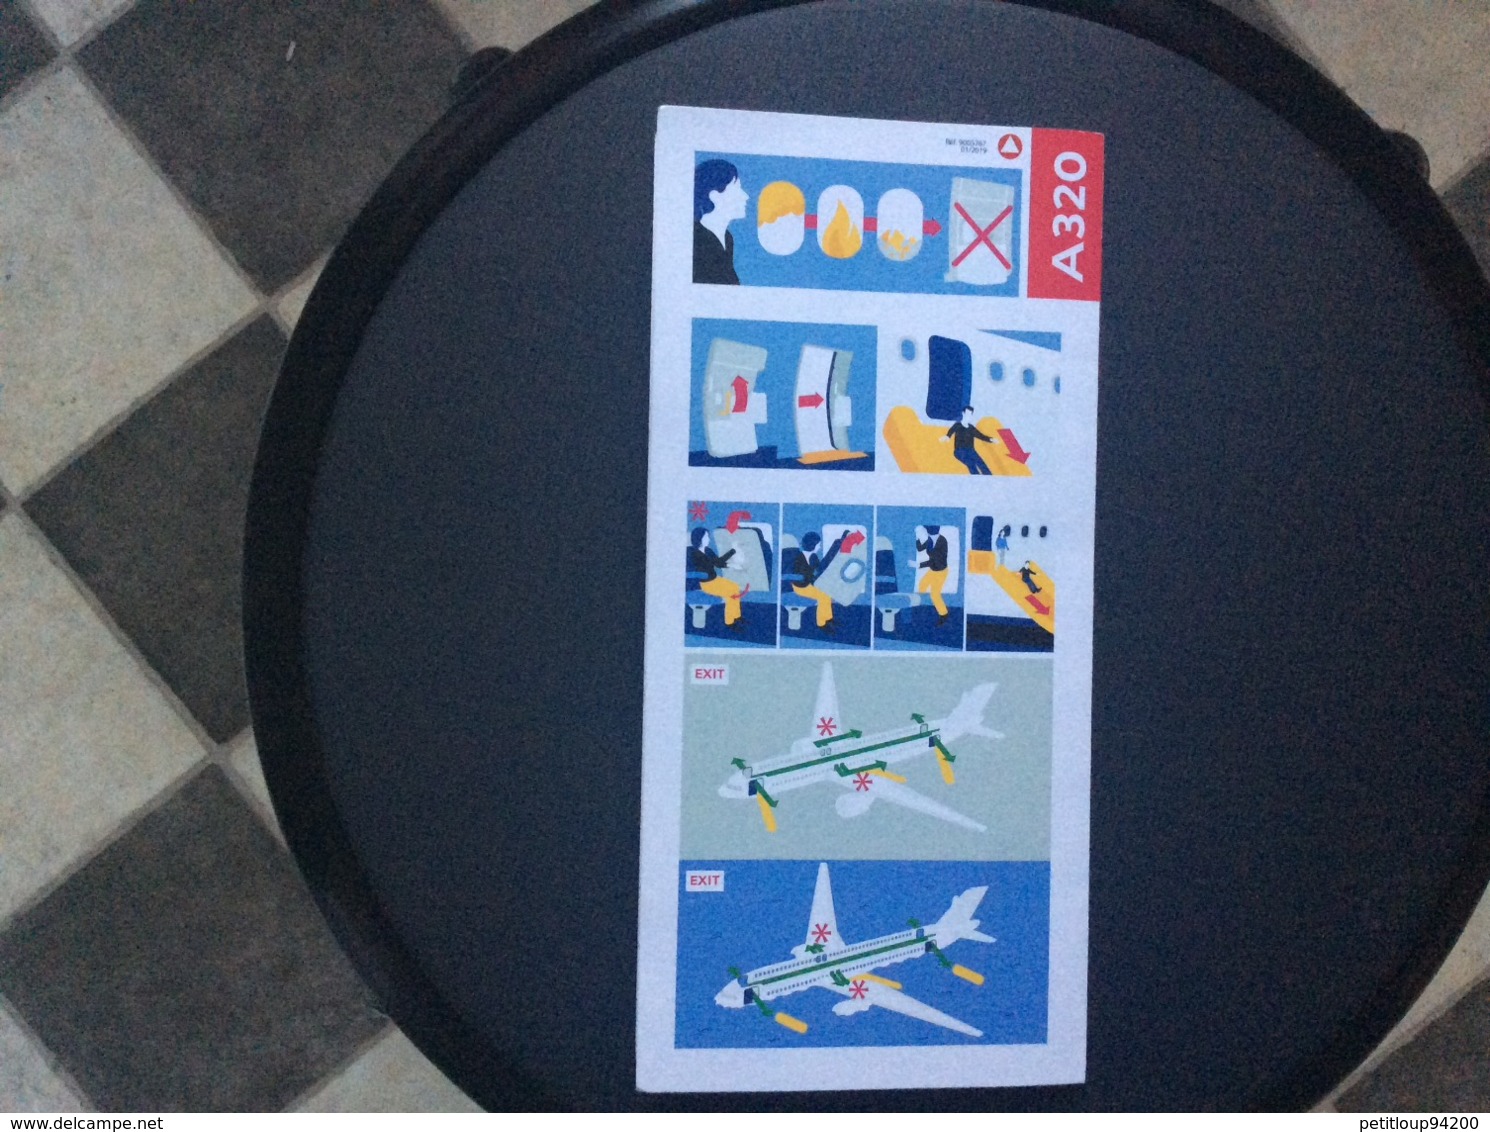 CONSIGNES DE SECURITE / SAFETY CARD  *Airbus A 320   AIR FRANCE  JOON - Consignes De Sécurité